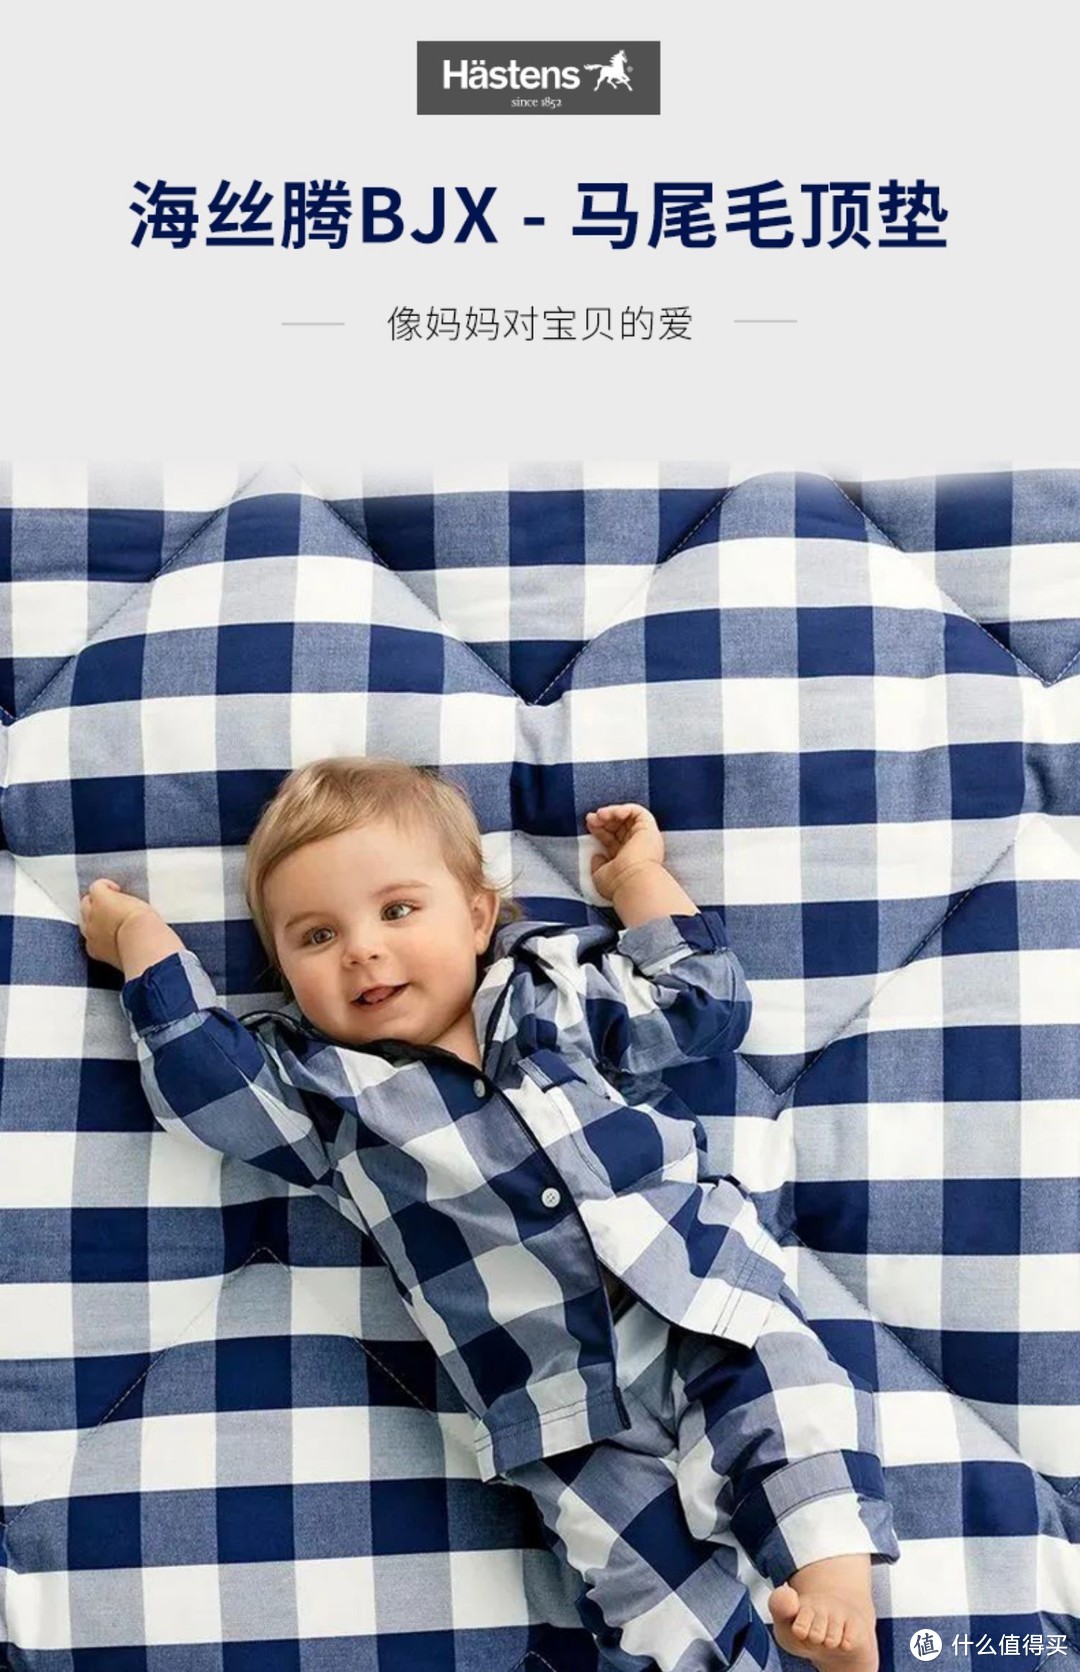 怪不得不愿意换床垫，原来这个床垫品牌太牛了。